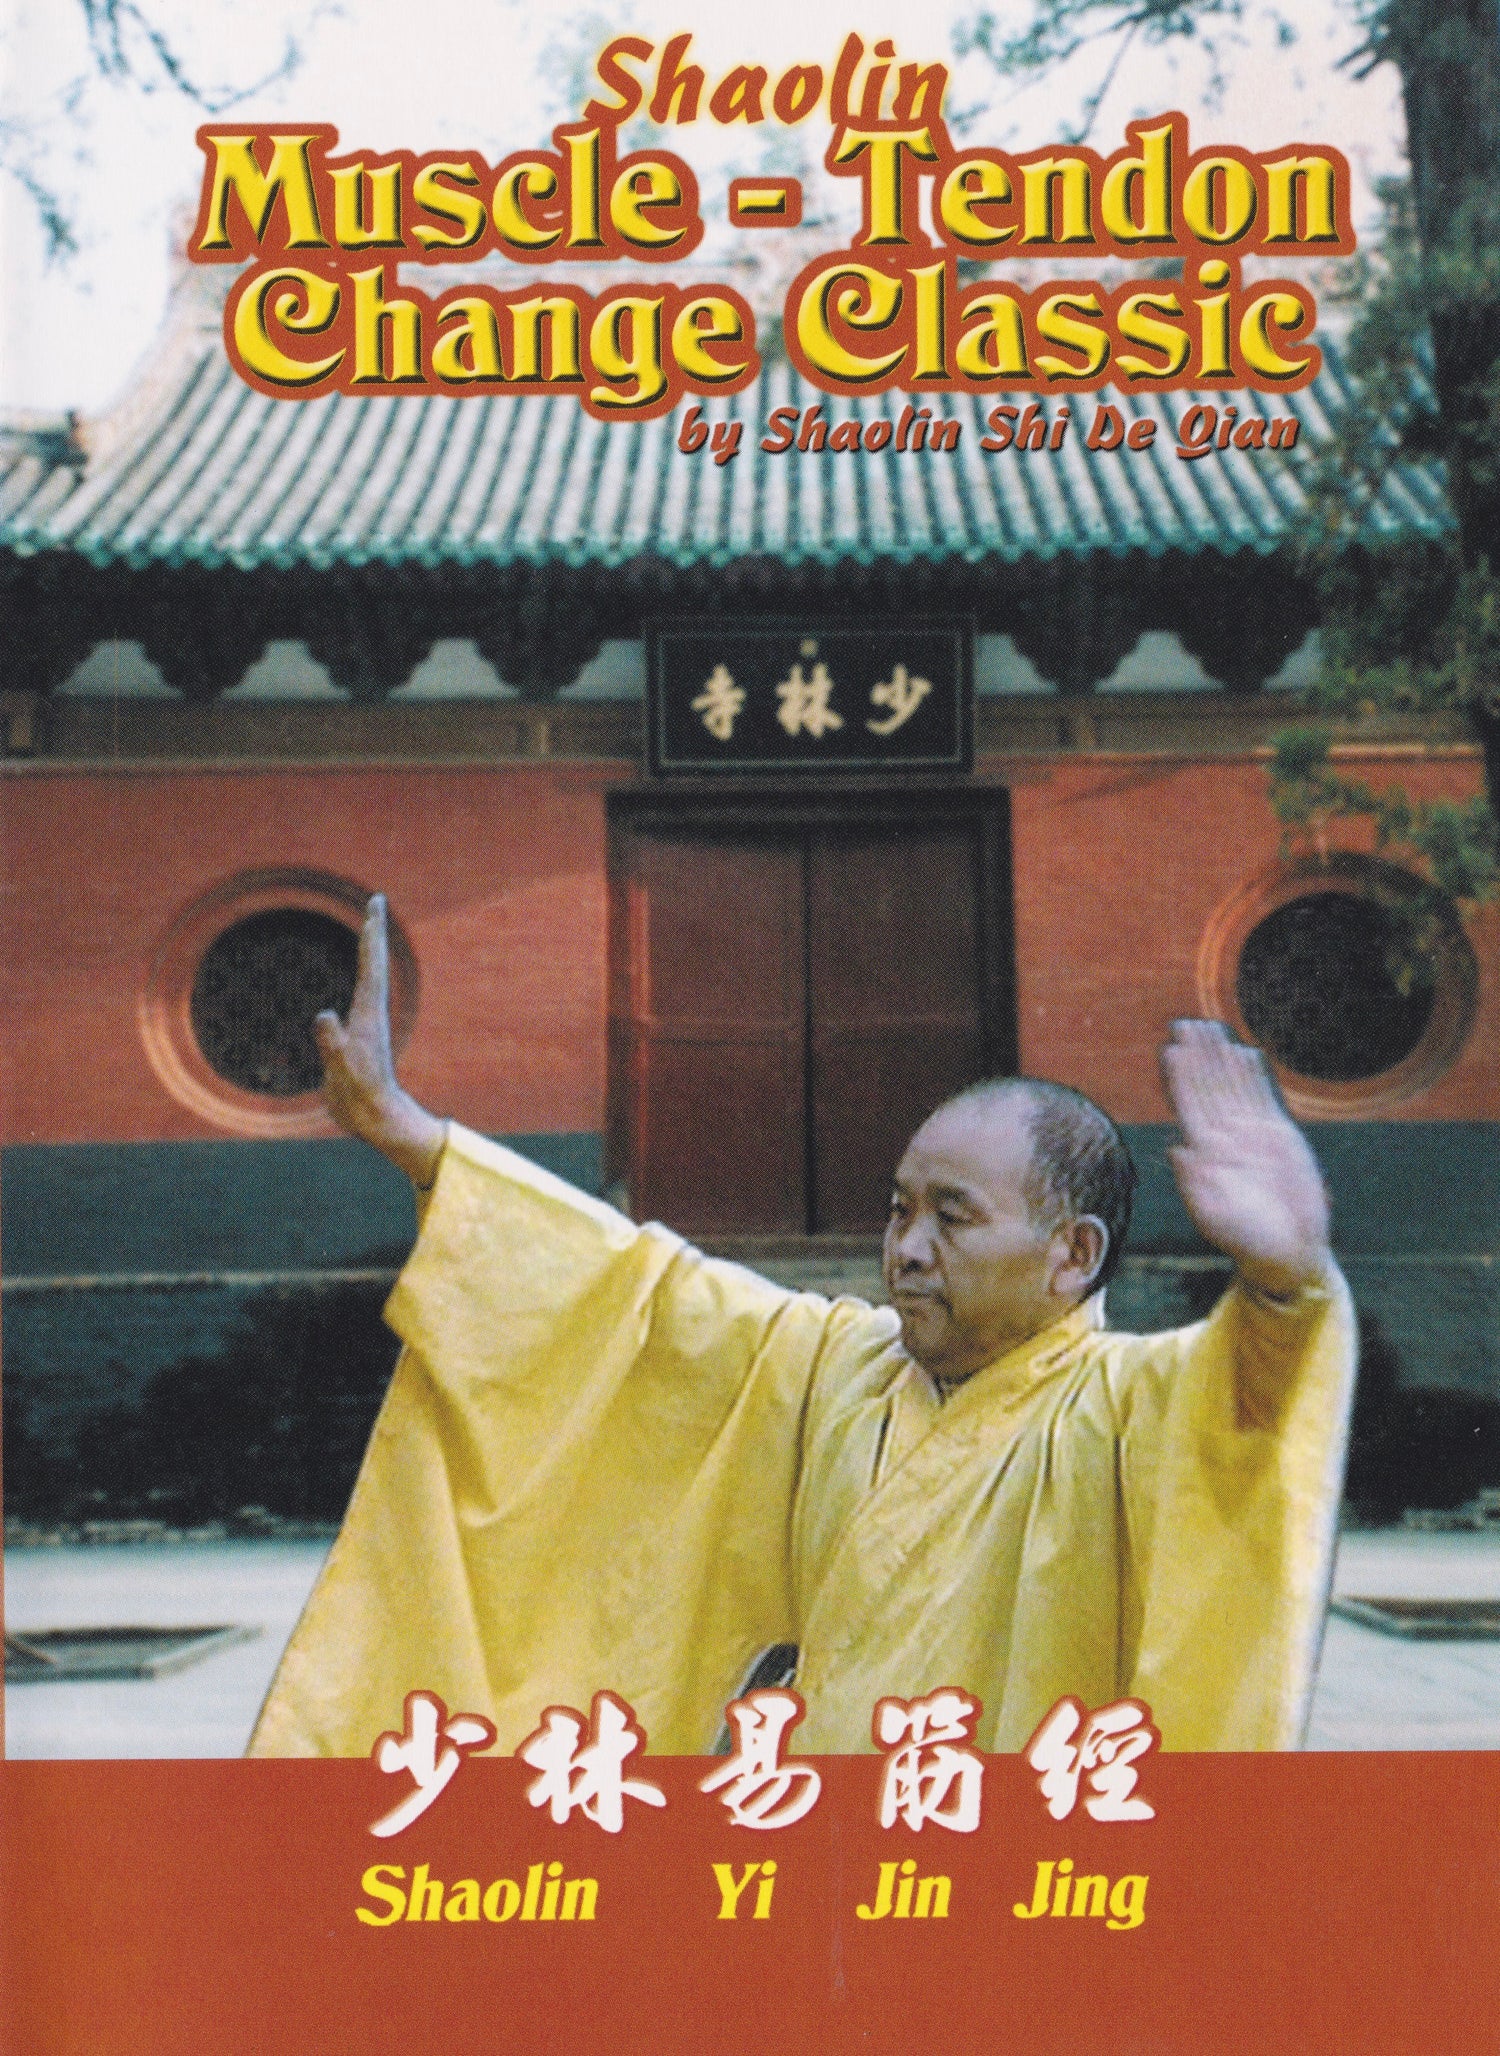 Shaolin Muscle Tendon Change Classic DVD by Shi De Qian